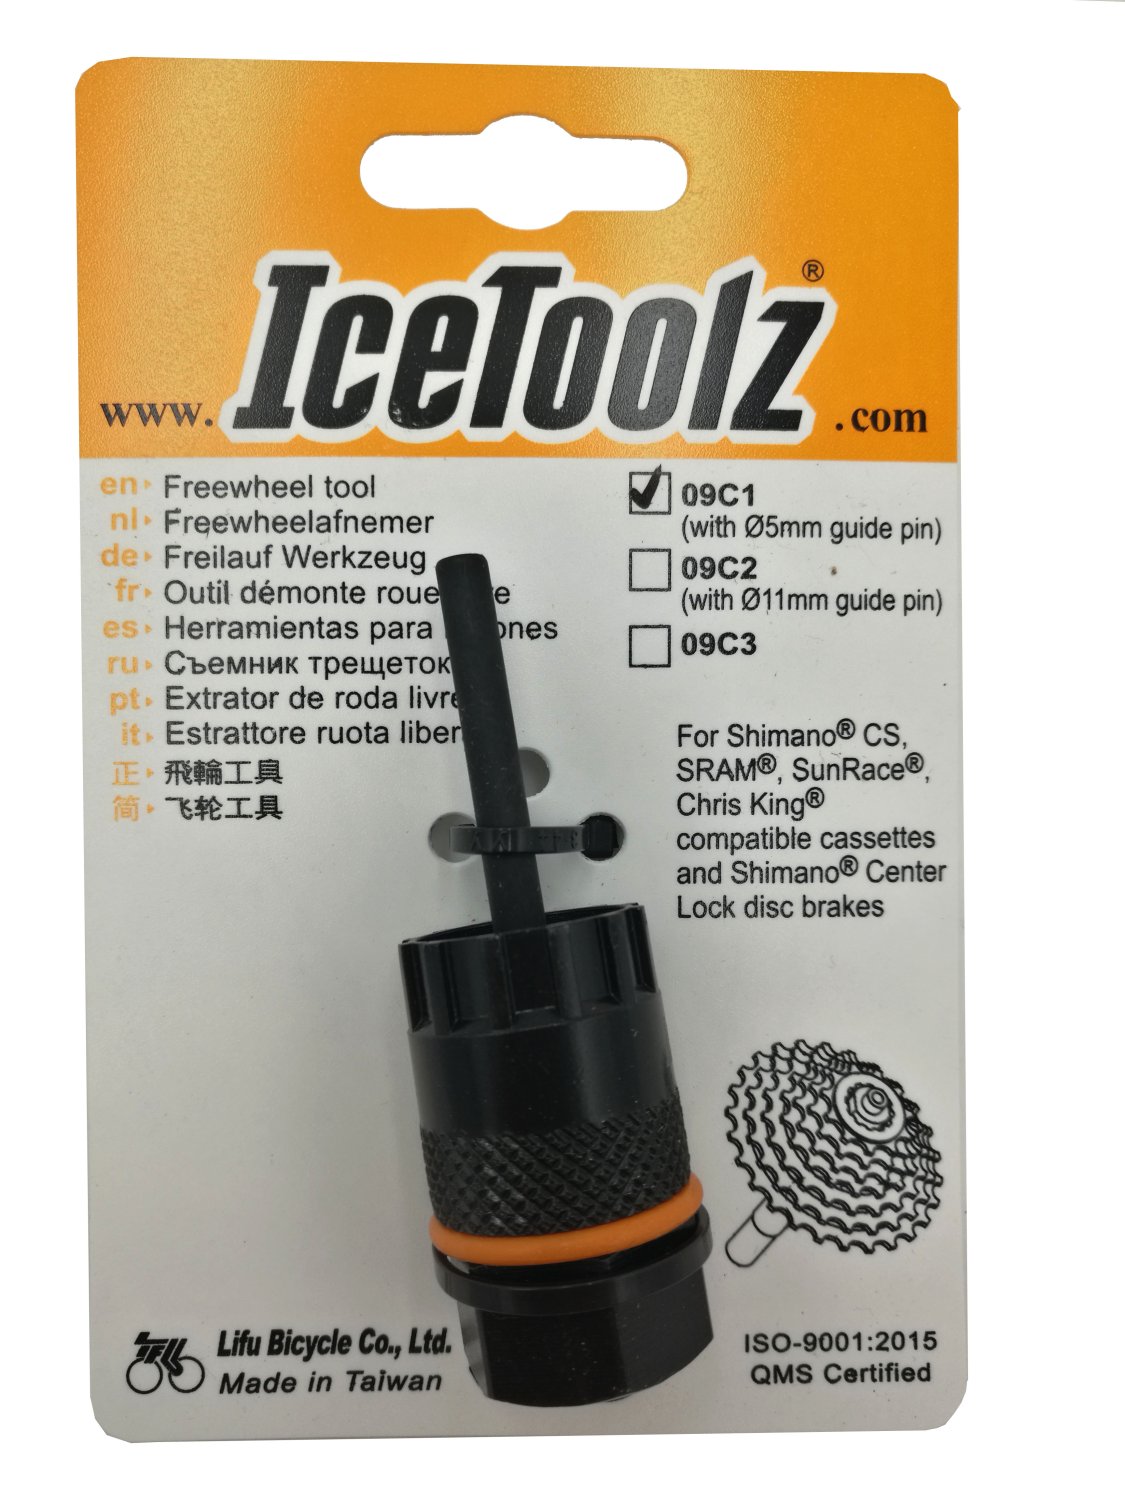 Съемник для кассет ICE TOOLZ Shimano CS/Center Lock, с направляющей , Сr-V сталь, 09C1 съемник кассеты parktool для shimano sram sunrace и др с направляющим штифтом ptlfr 5 2g